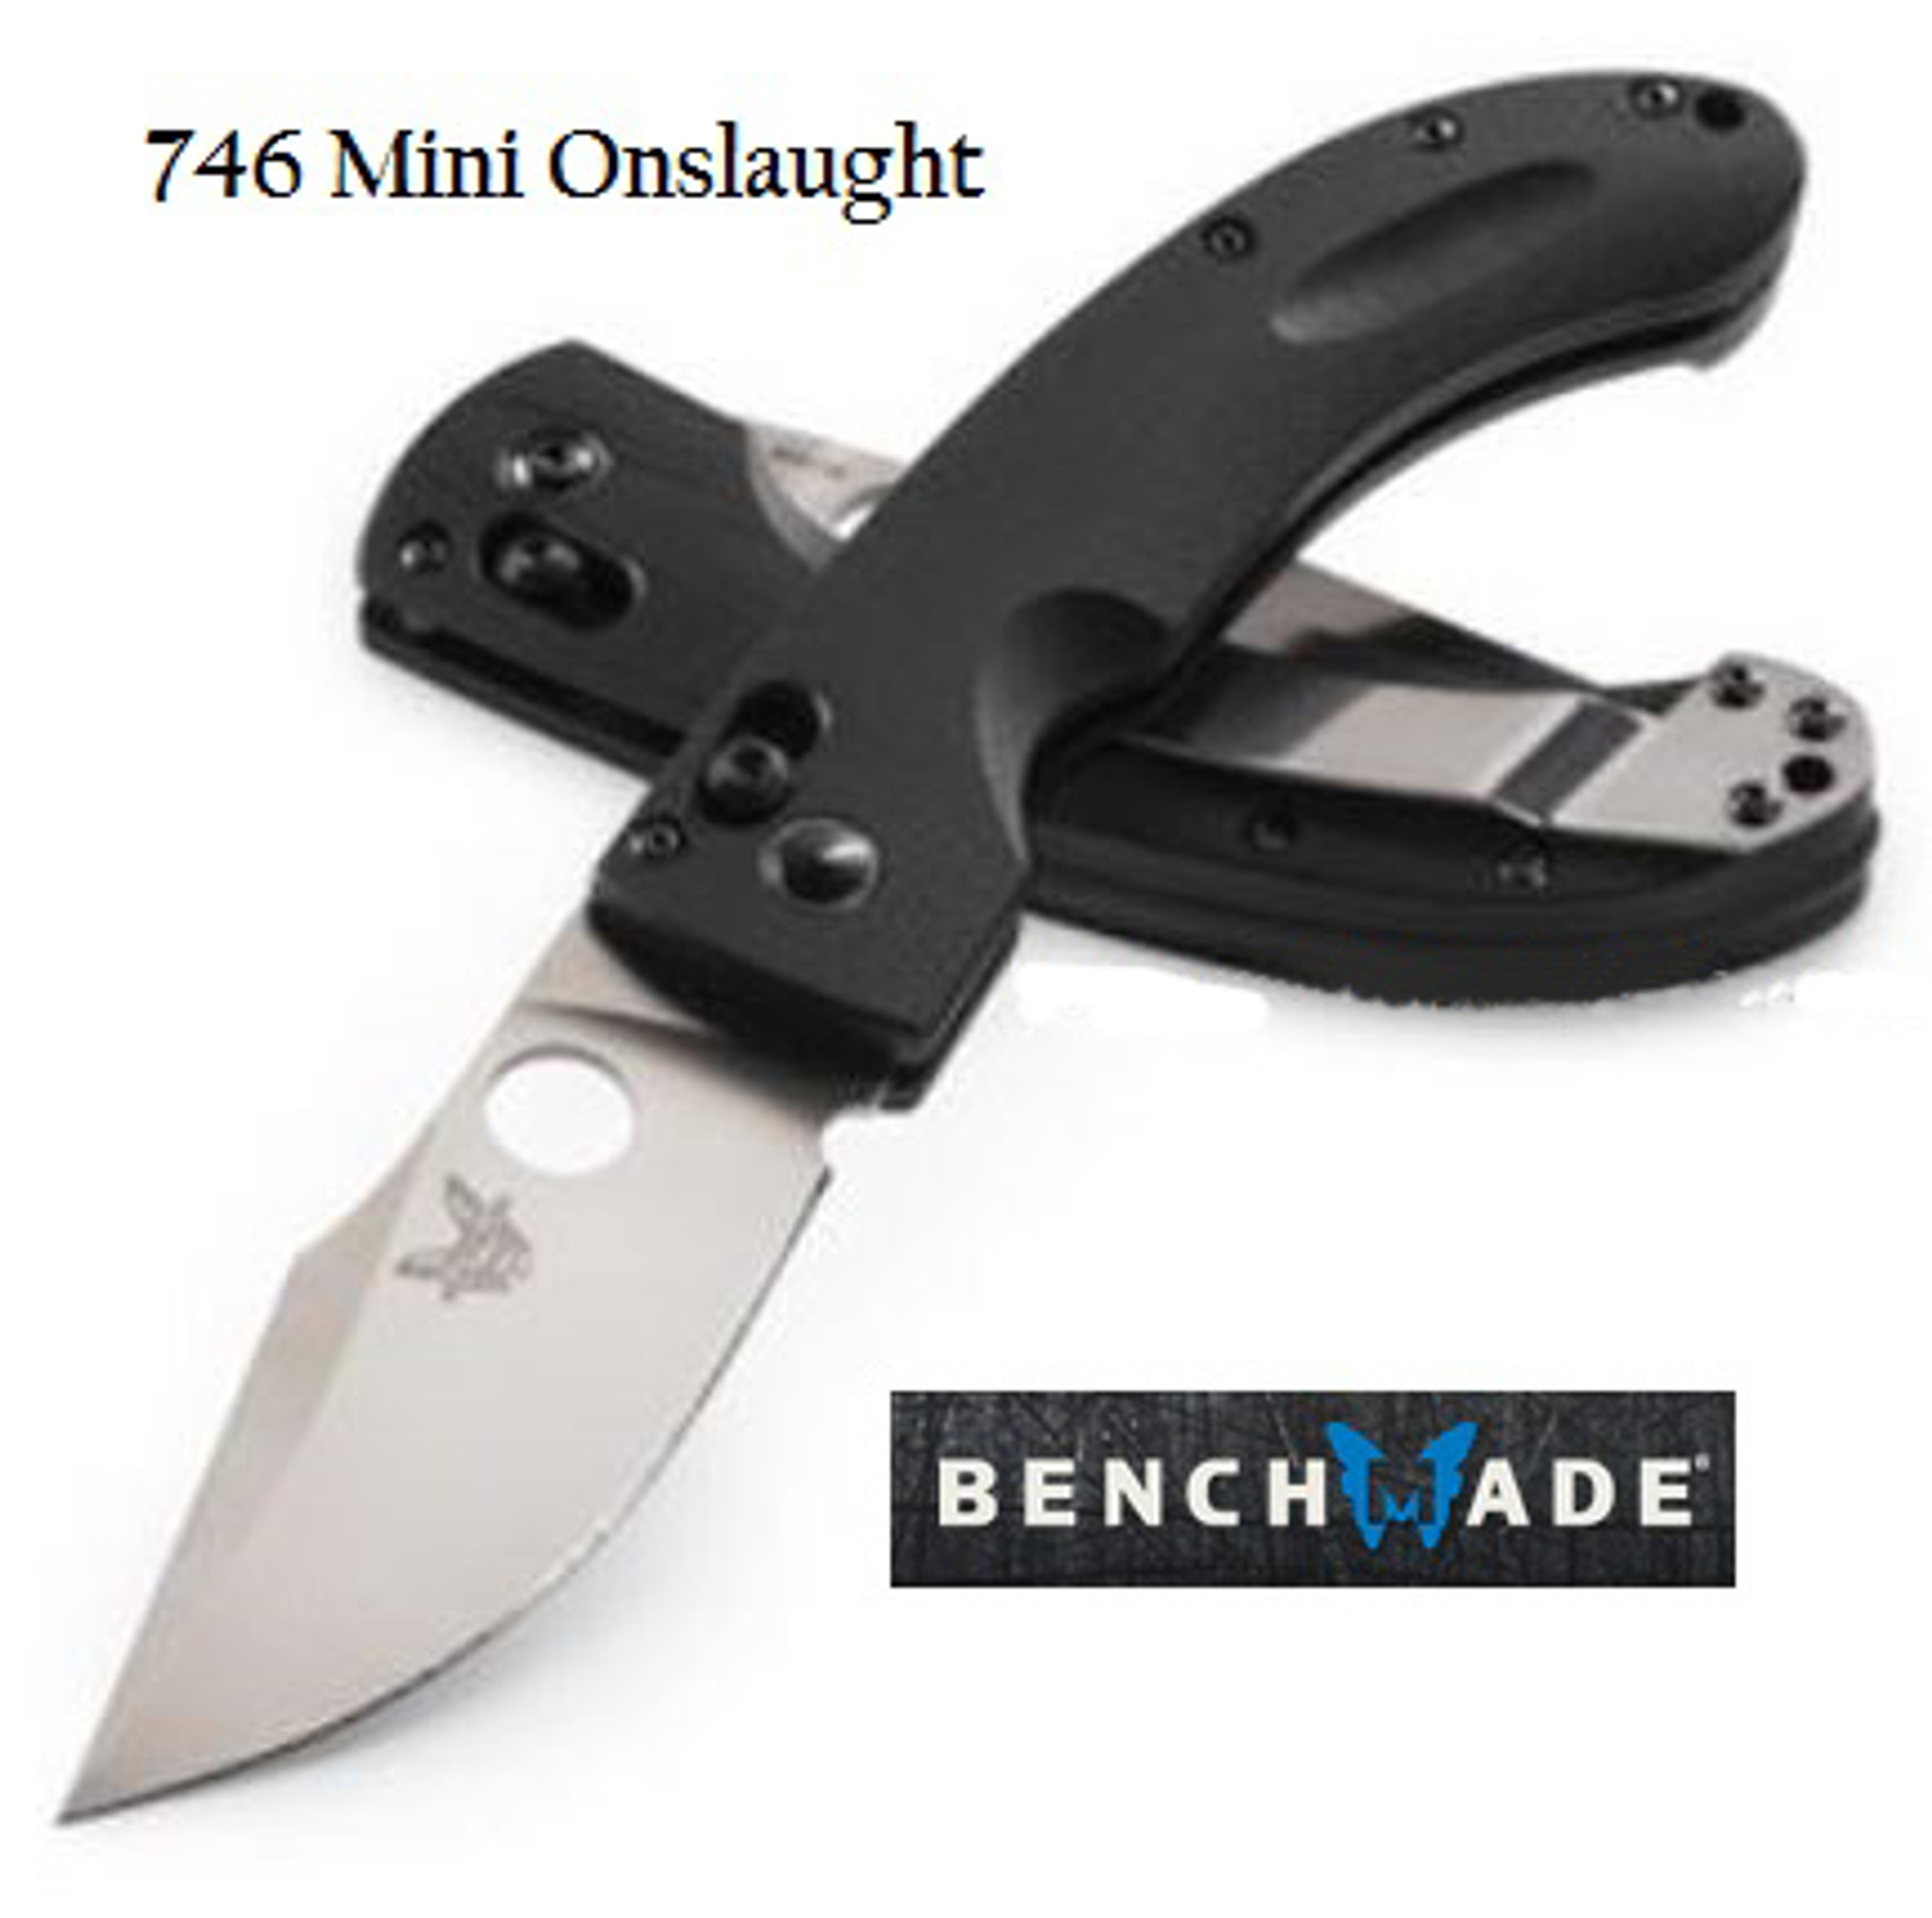 Benchmade 746 Mini-Onslaught Satin Plain Edge